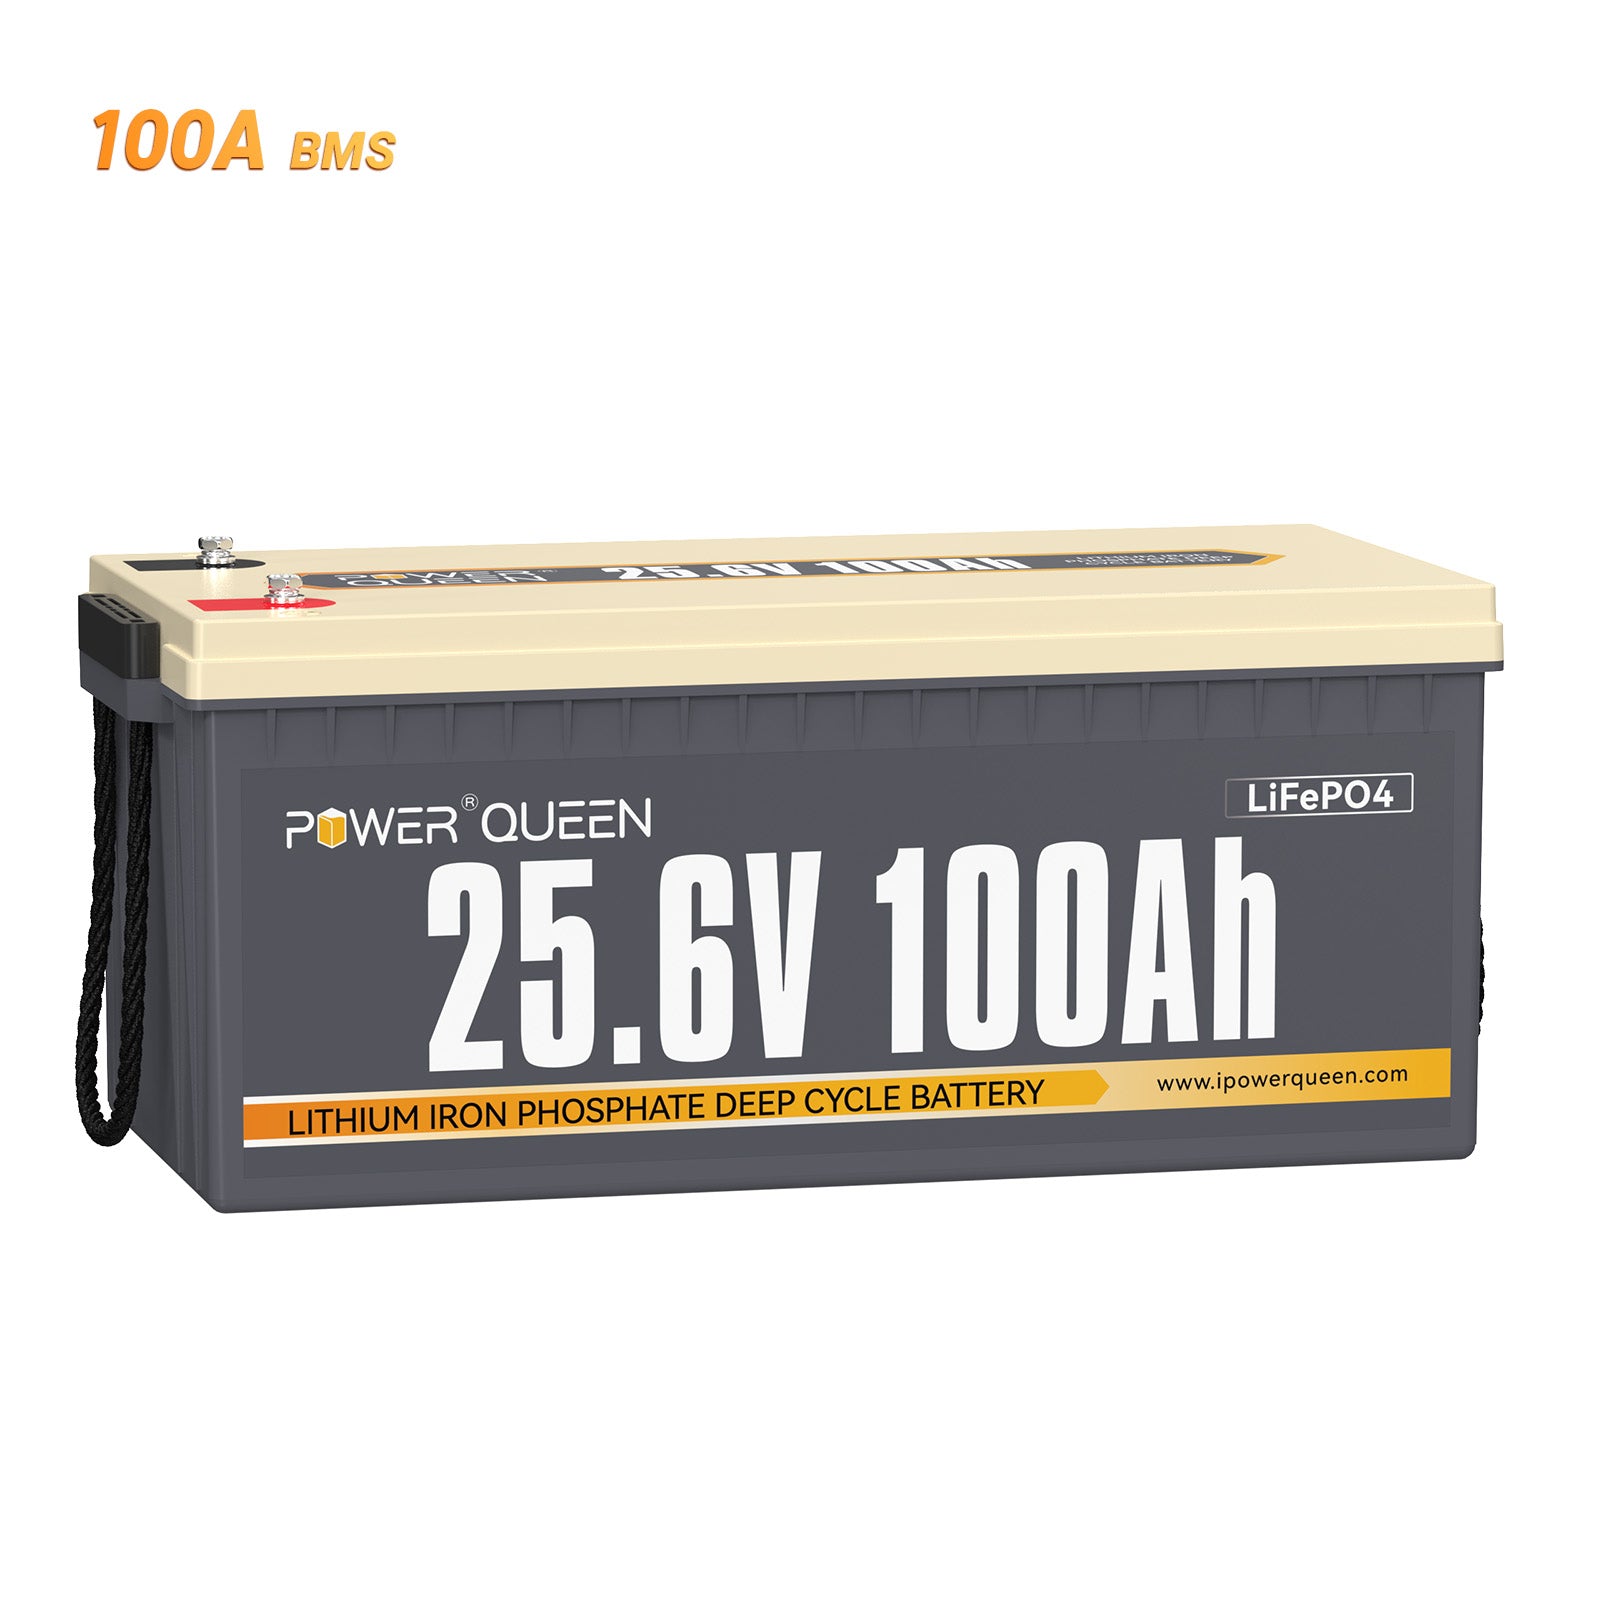 【0% VAT】Power Queen 25.6V 100Ah LiFePO4 battery, Built-in 100A BMS